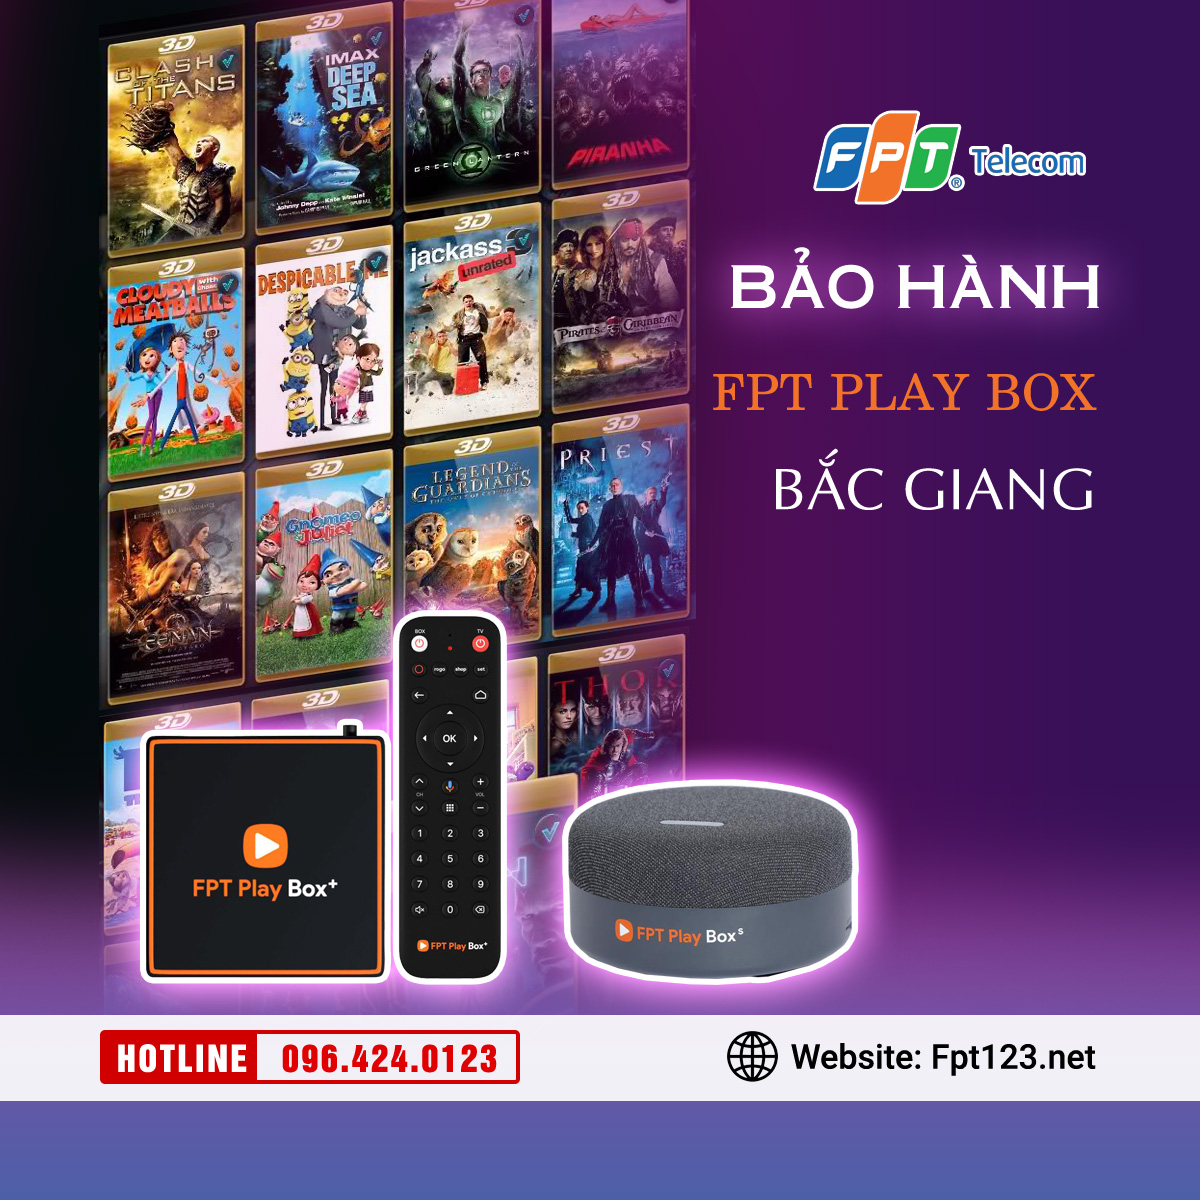 Bảo hành FPT Play Box tại Bắc Giang